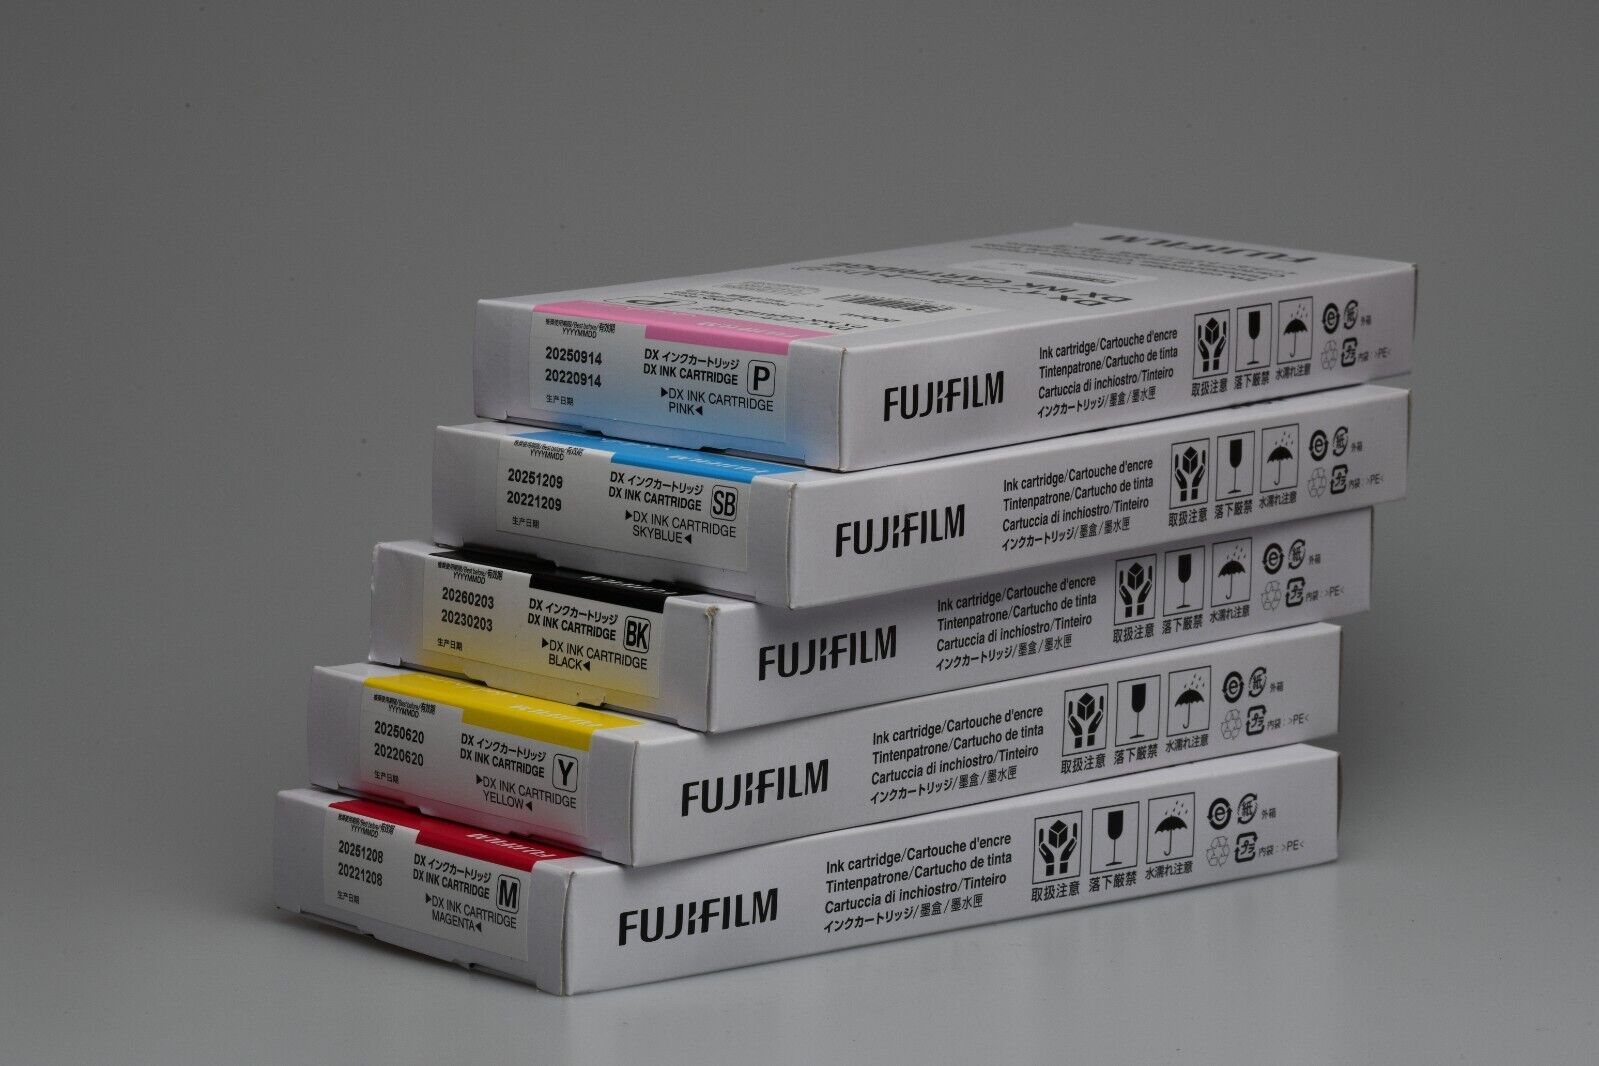 FujiFilm DX 100 Ink Cartridge YELLOW (619)